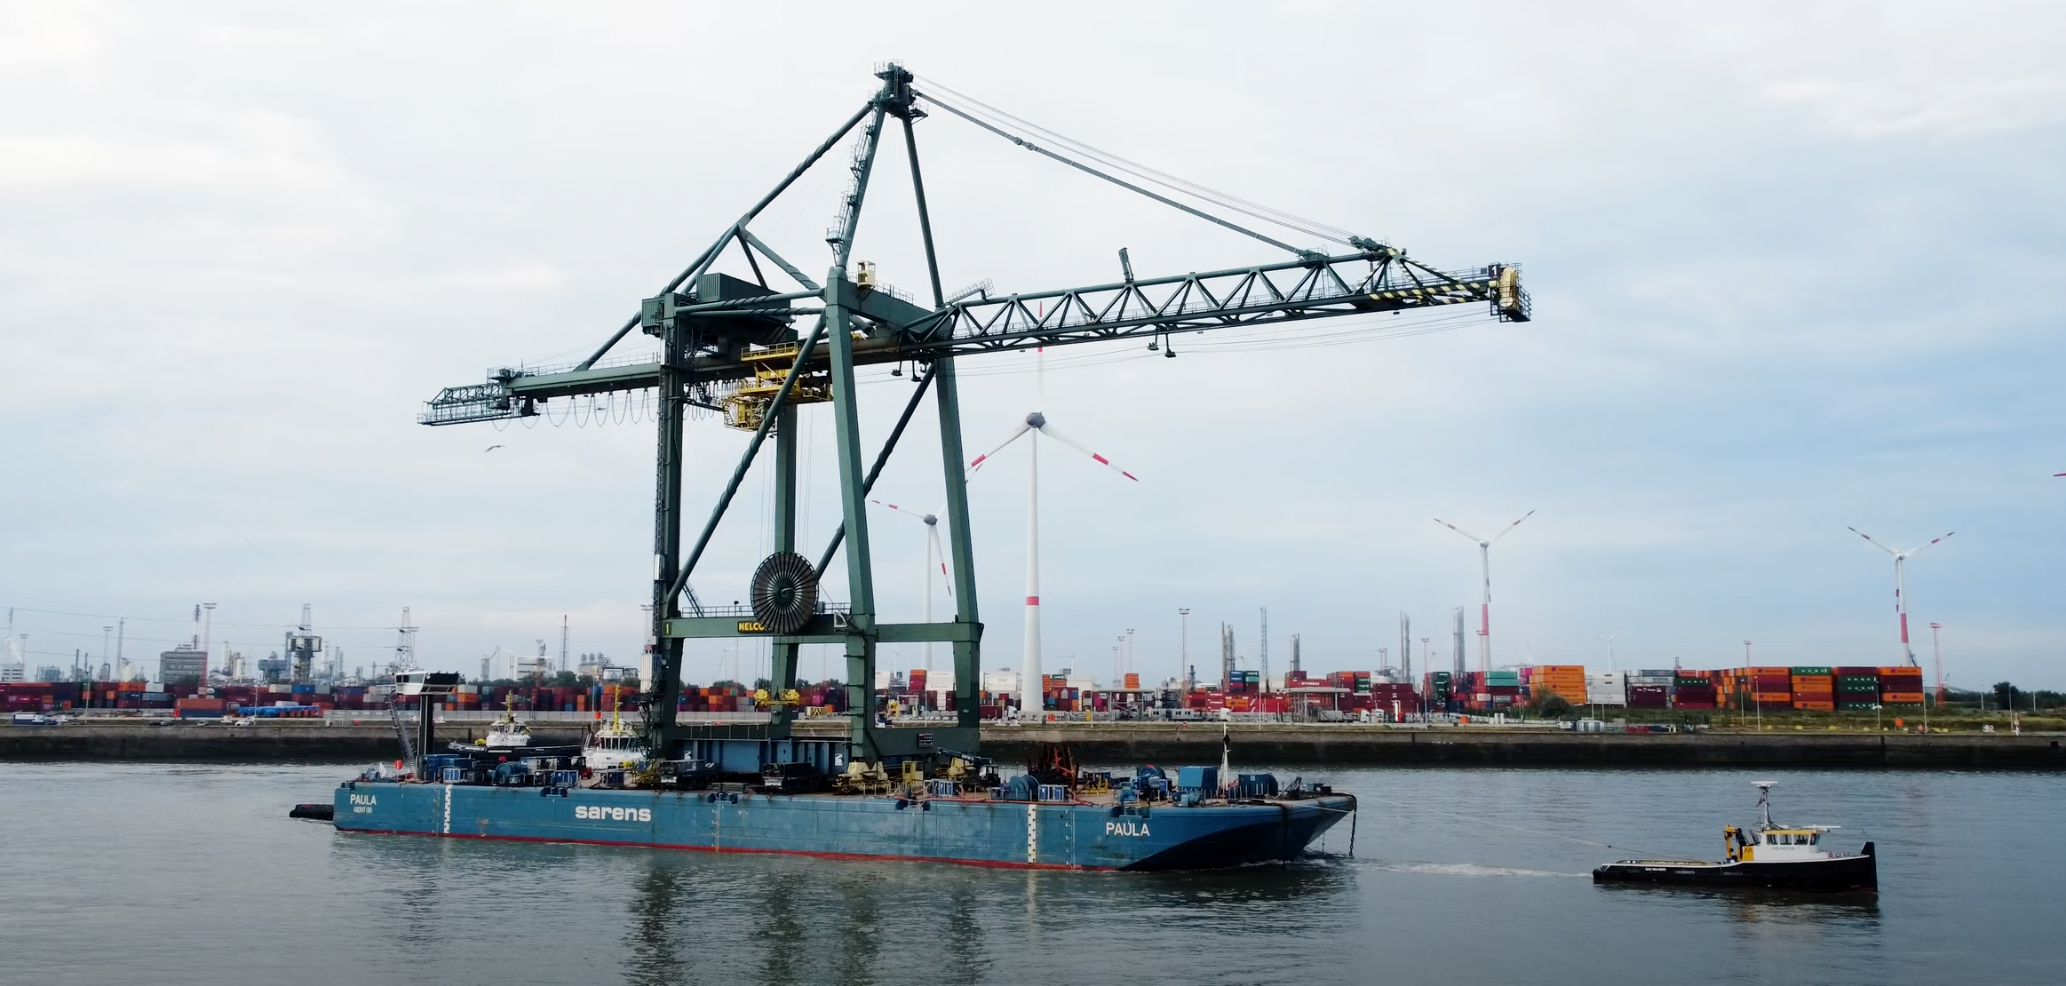 20220915 Antwerpen PSA Antwerp verhuist containerkraan Kaai 869 naar Kaai 703